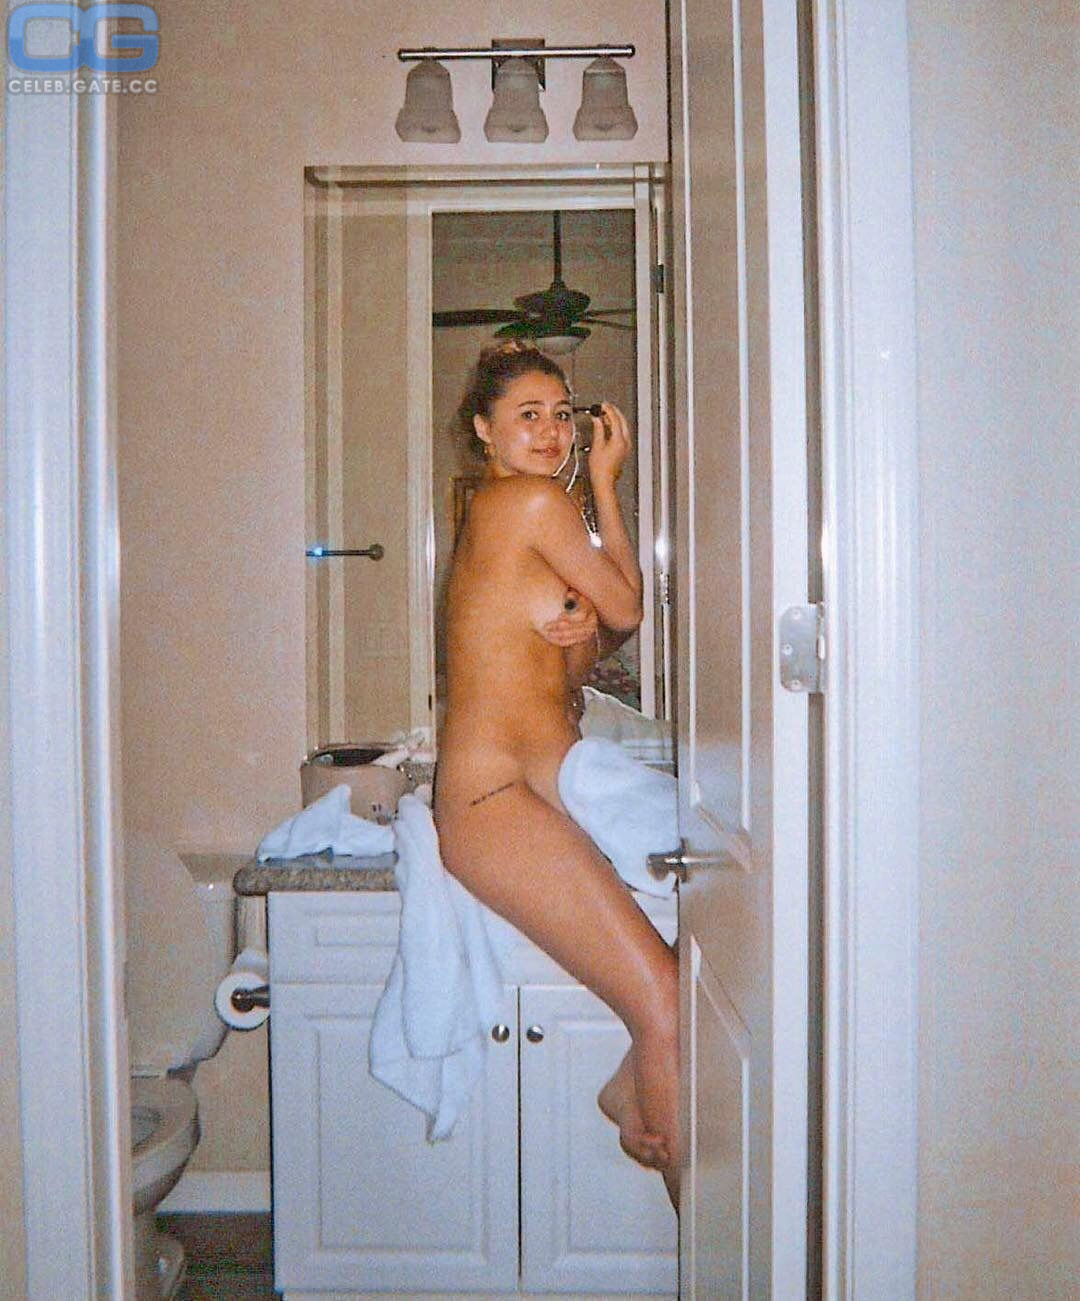 Lia Marie Johnson leaked nudes